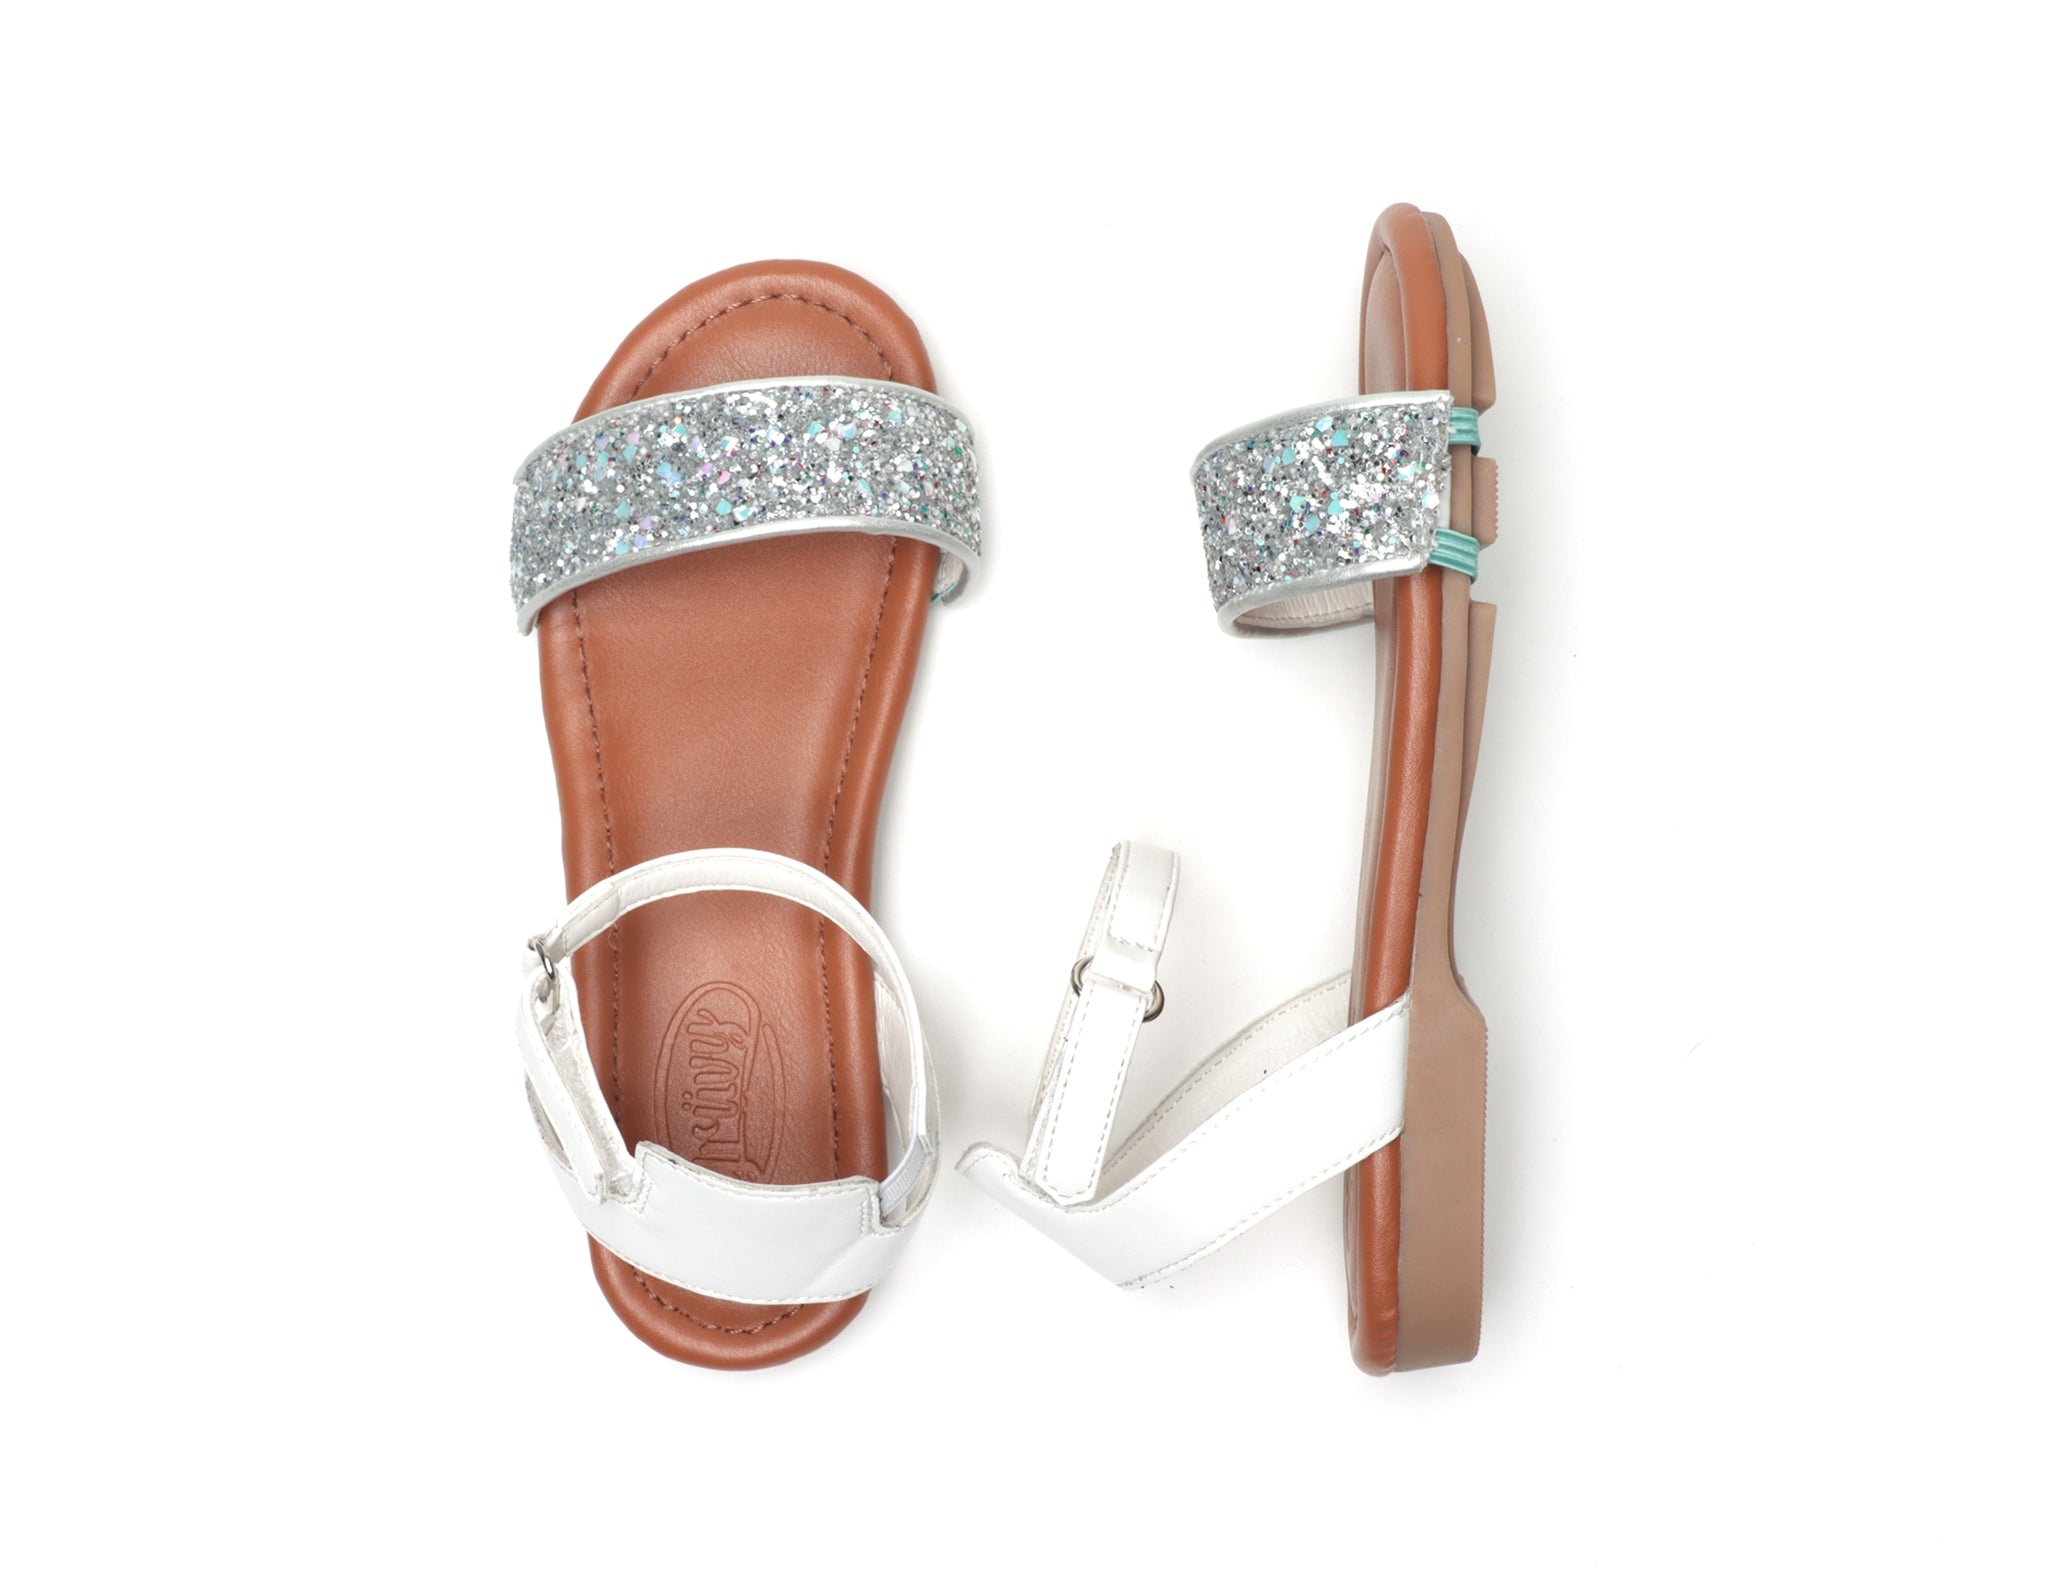 Kids 2 in 1 Sandal w/ Changeable Silver Glitter Shoe Accessory